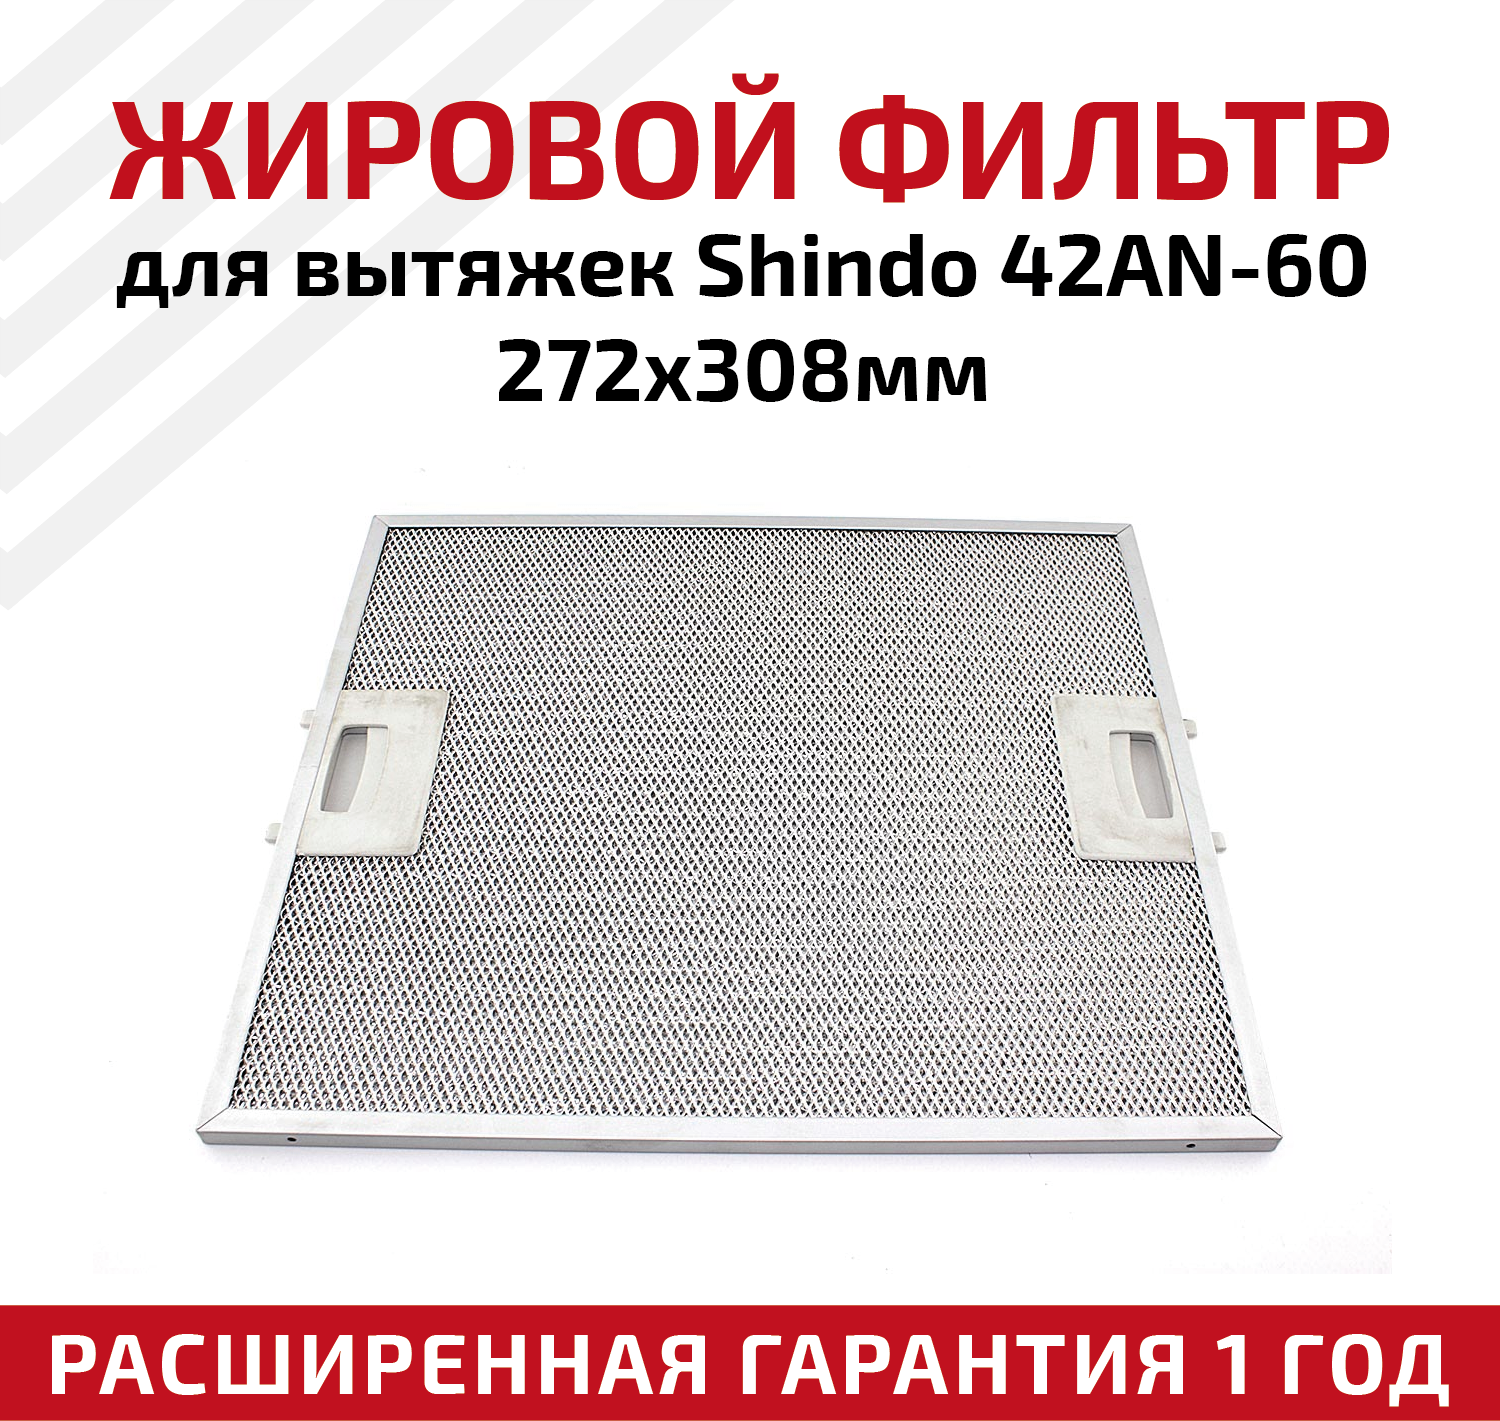 Жировой фильтр (кассета) алюминиевый (металлический) рамочный для кухонных вытяжек Shindo 42AN-60, многоразовый, 272х308мм